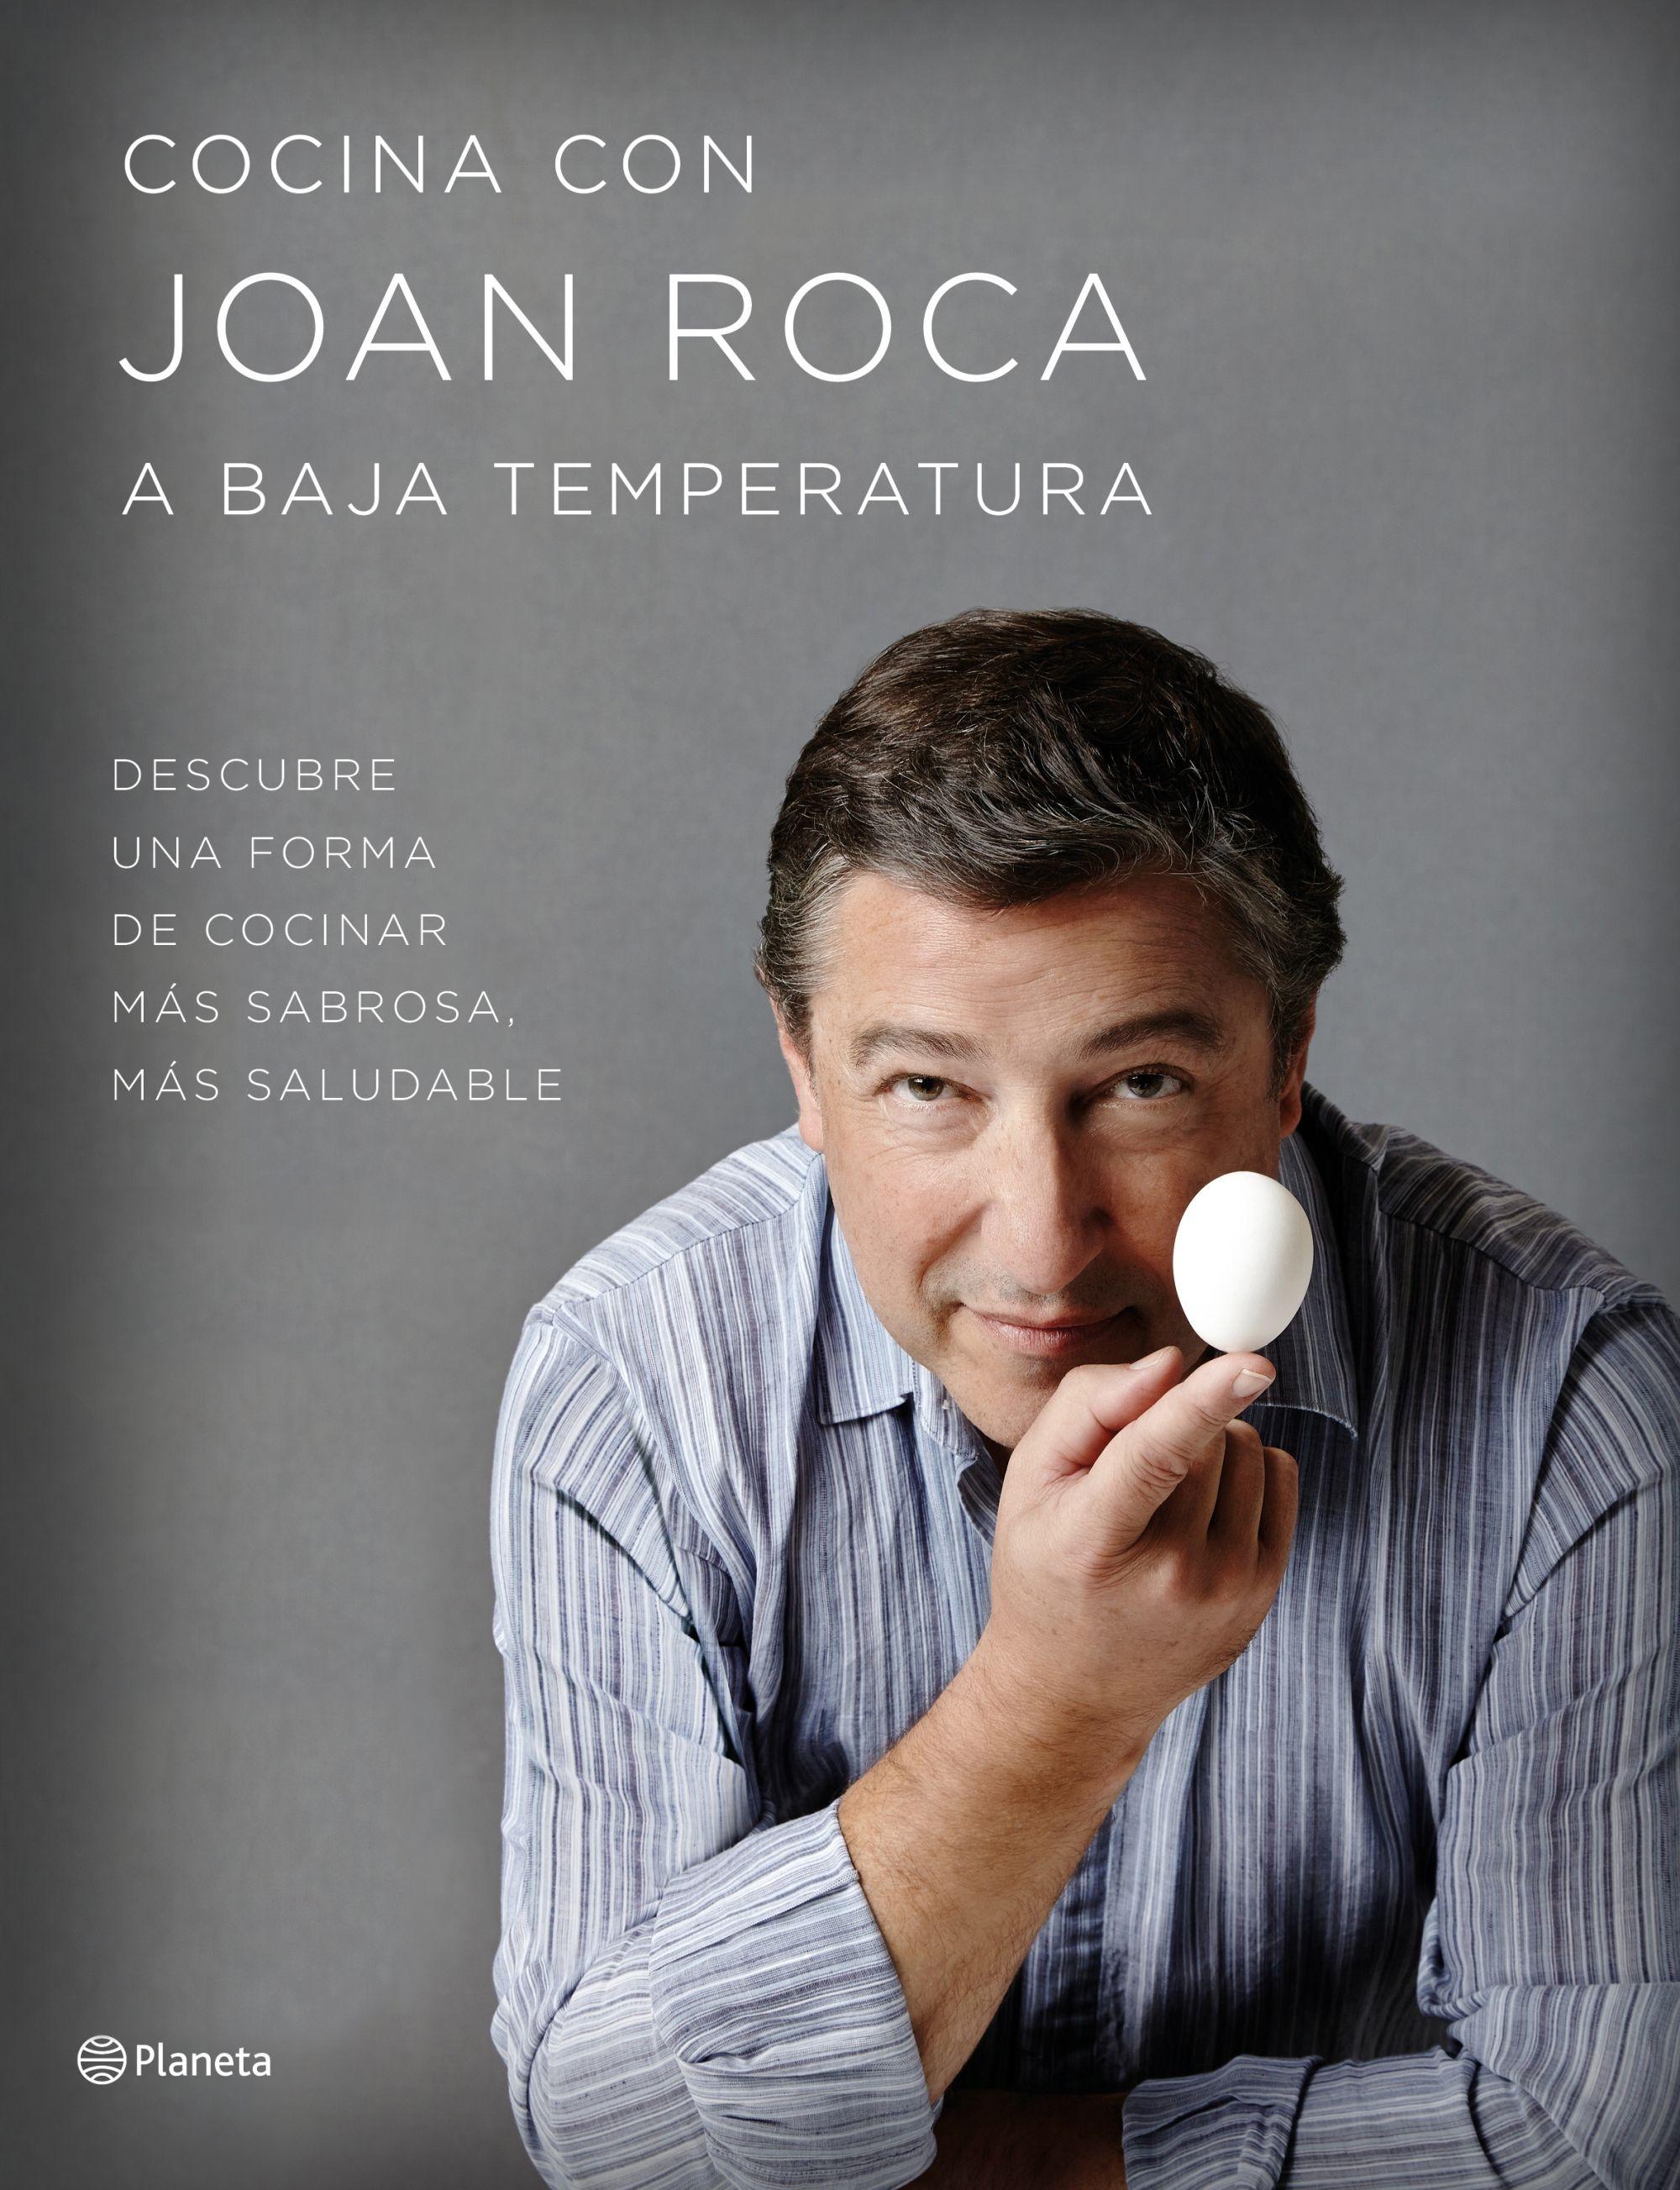 Cocina con Joan Roca a baja temperatura. 